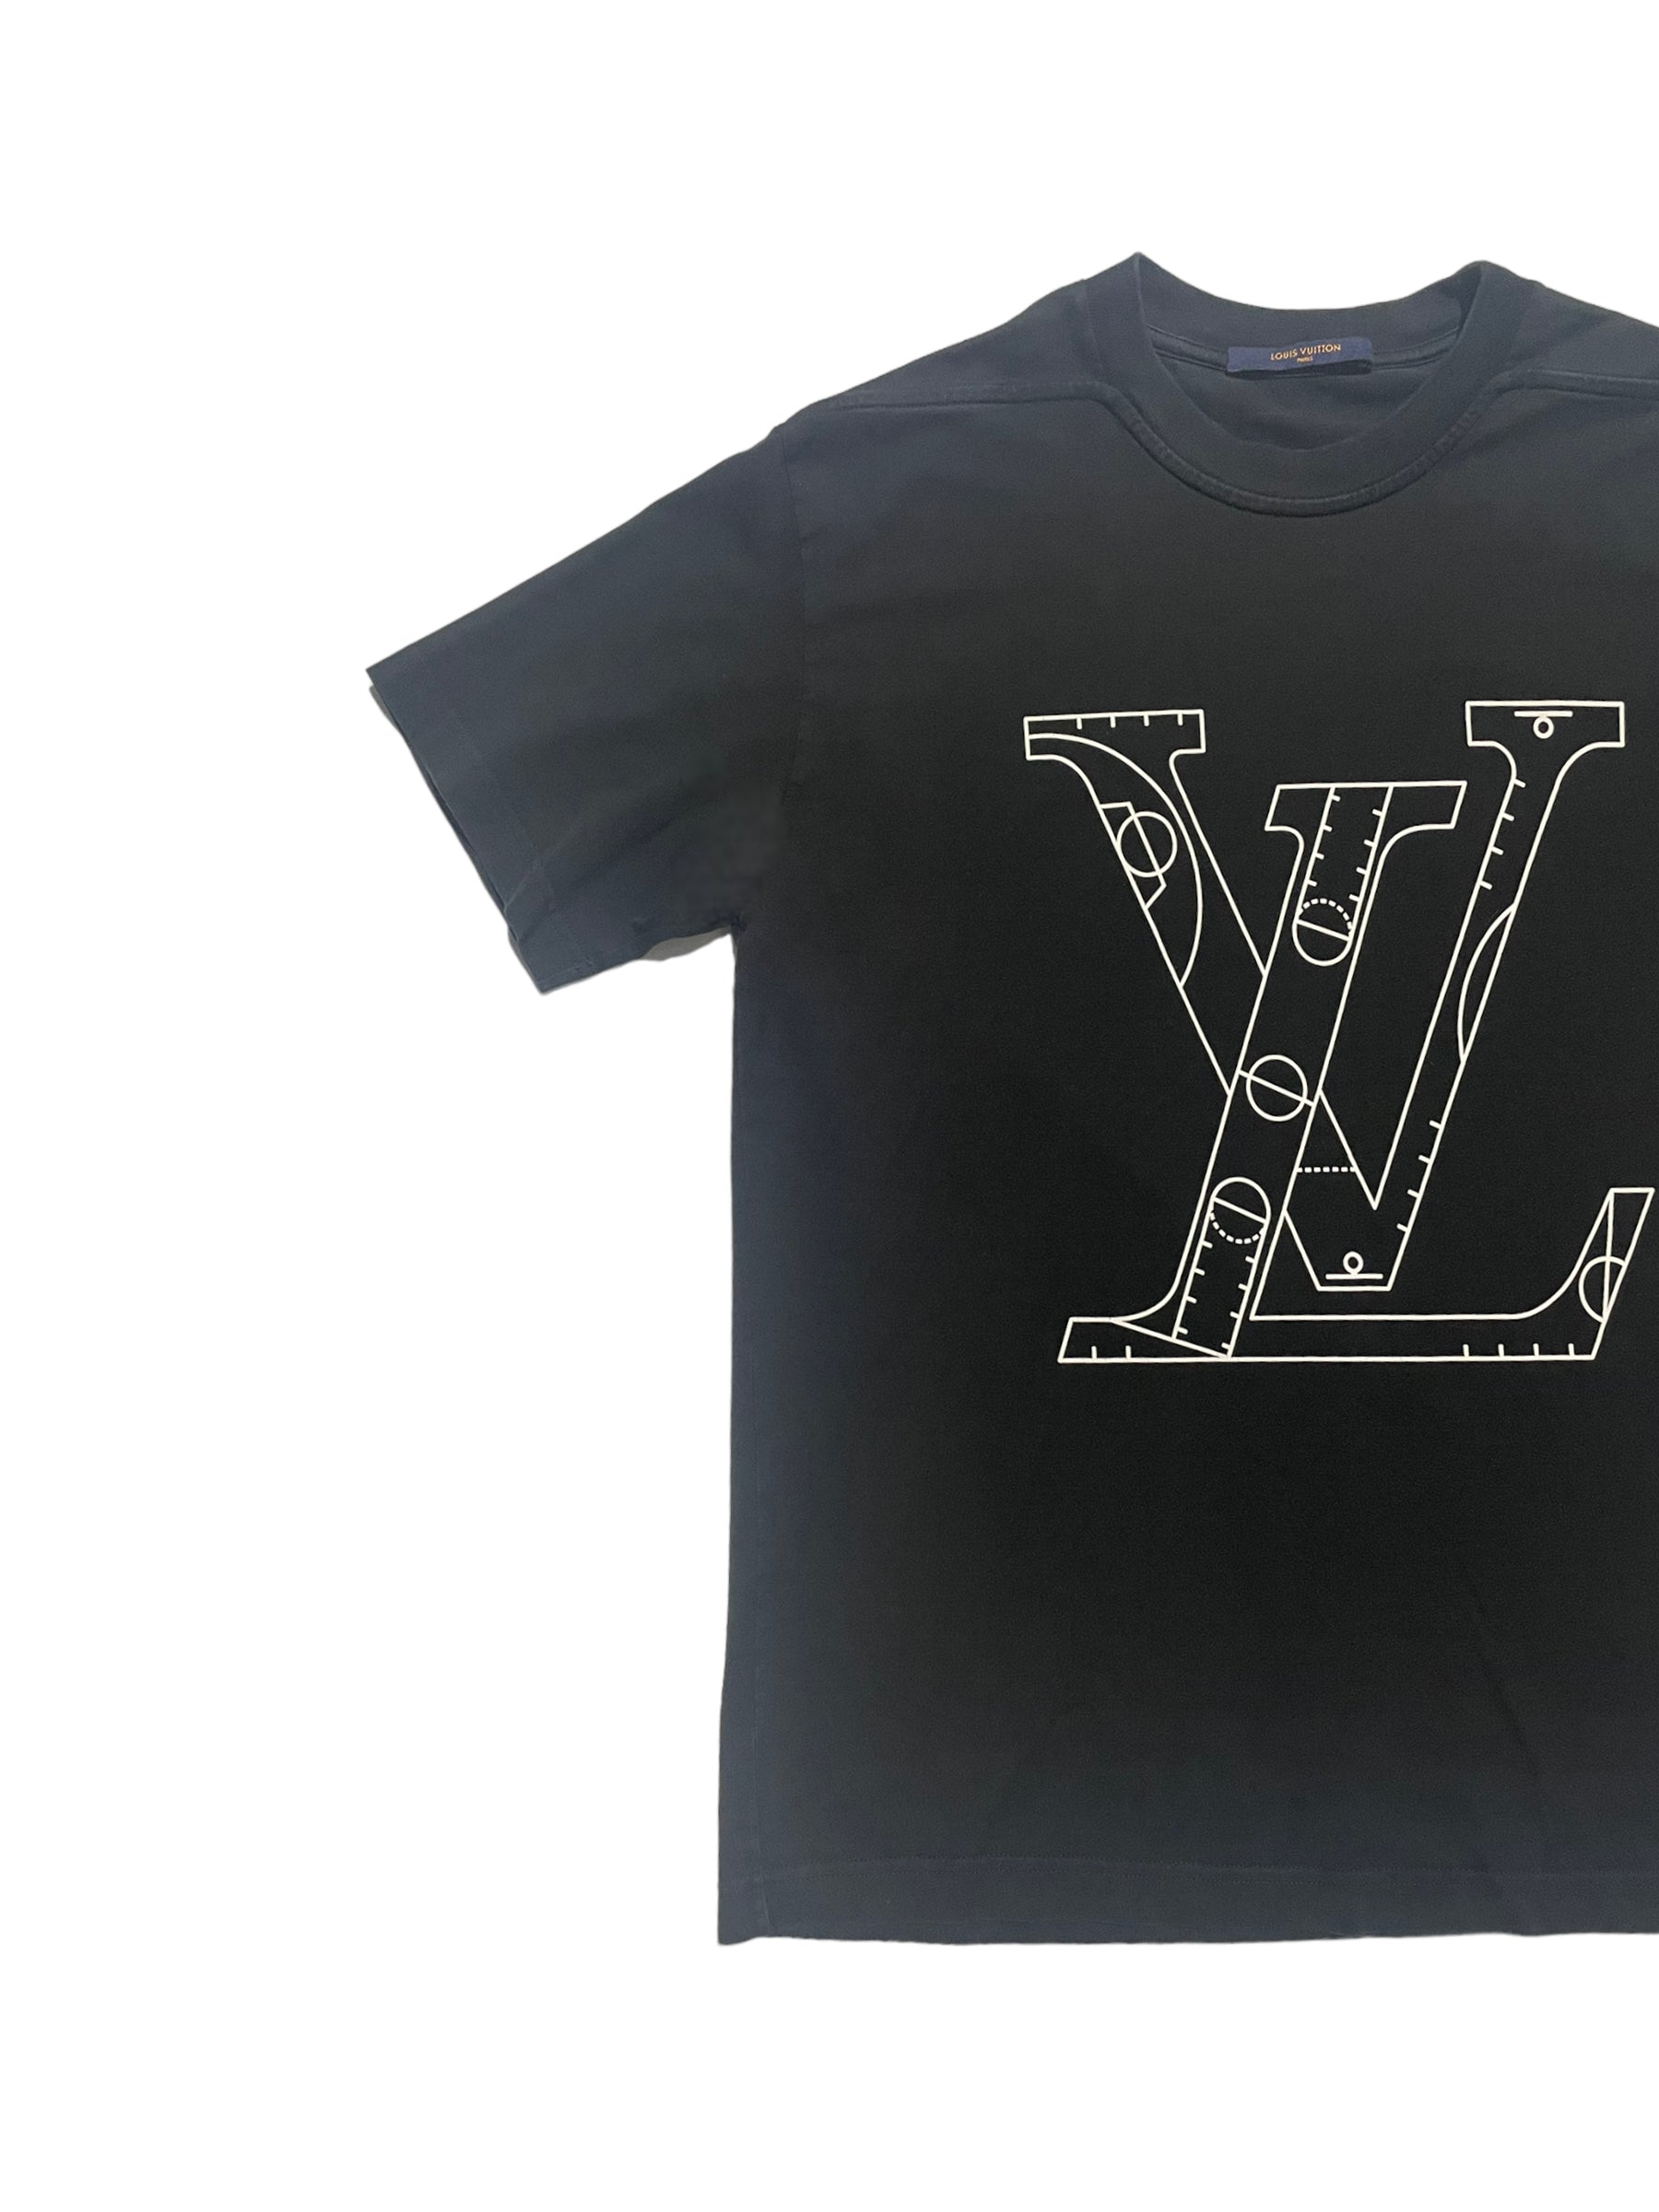 Louis Vuitton Virgil Abloh T Shirt For The SS19 Louis Vuitton Mens Show   Grailed